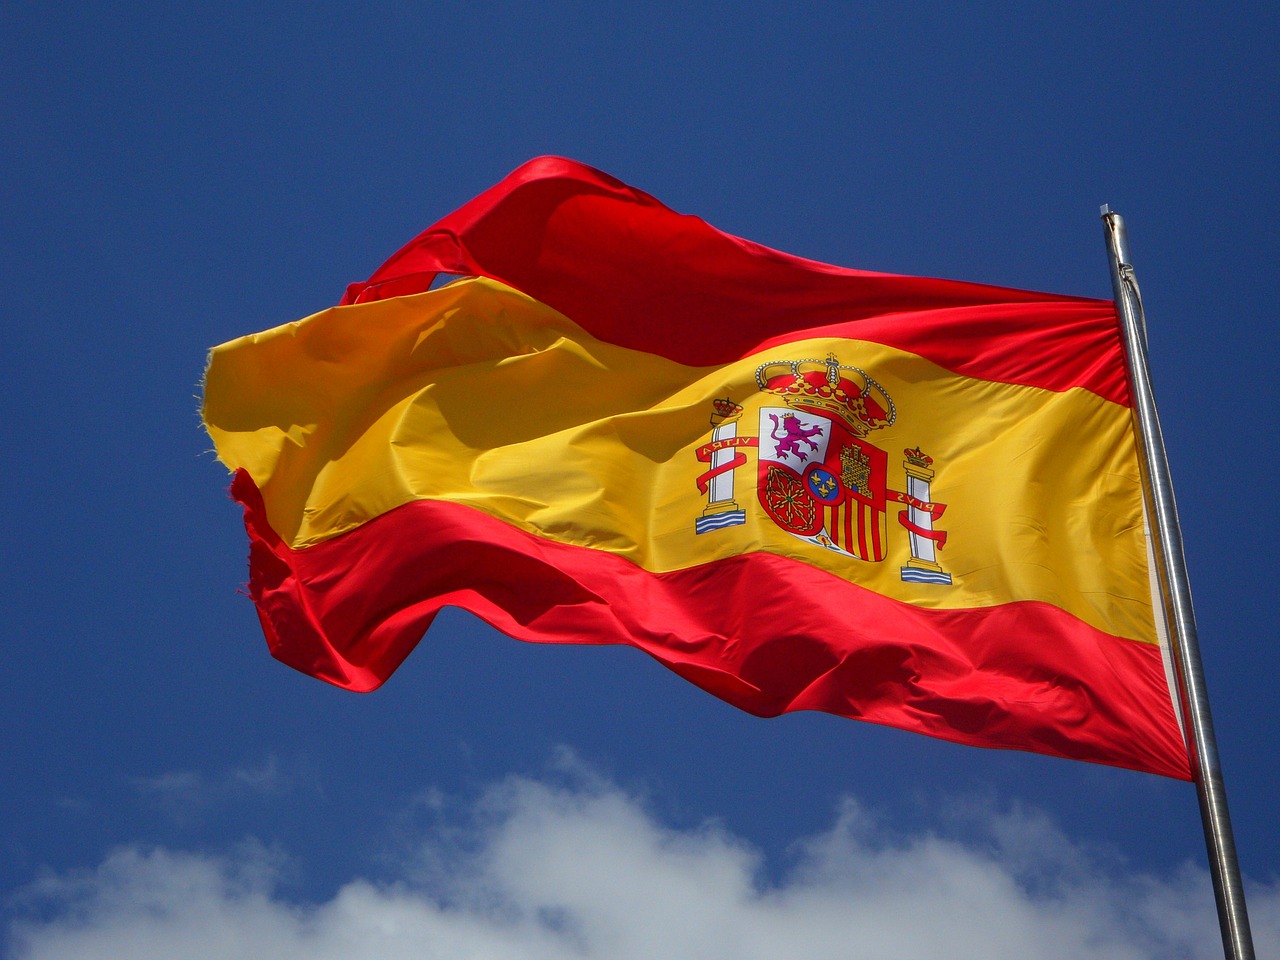 Espagne : une croissance de 3% en 2018… si la Catalogne rentre dans le rang